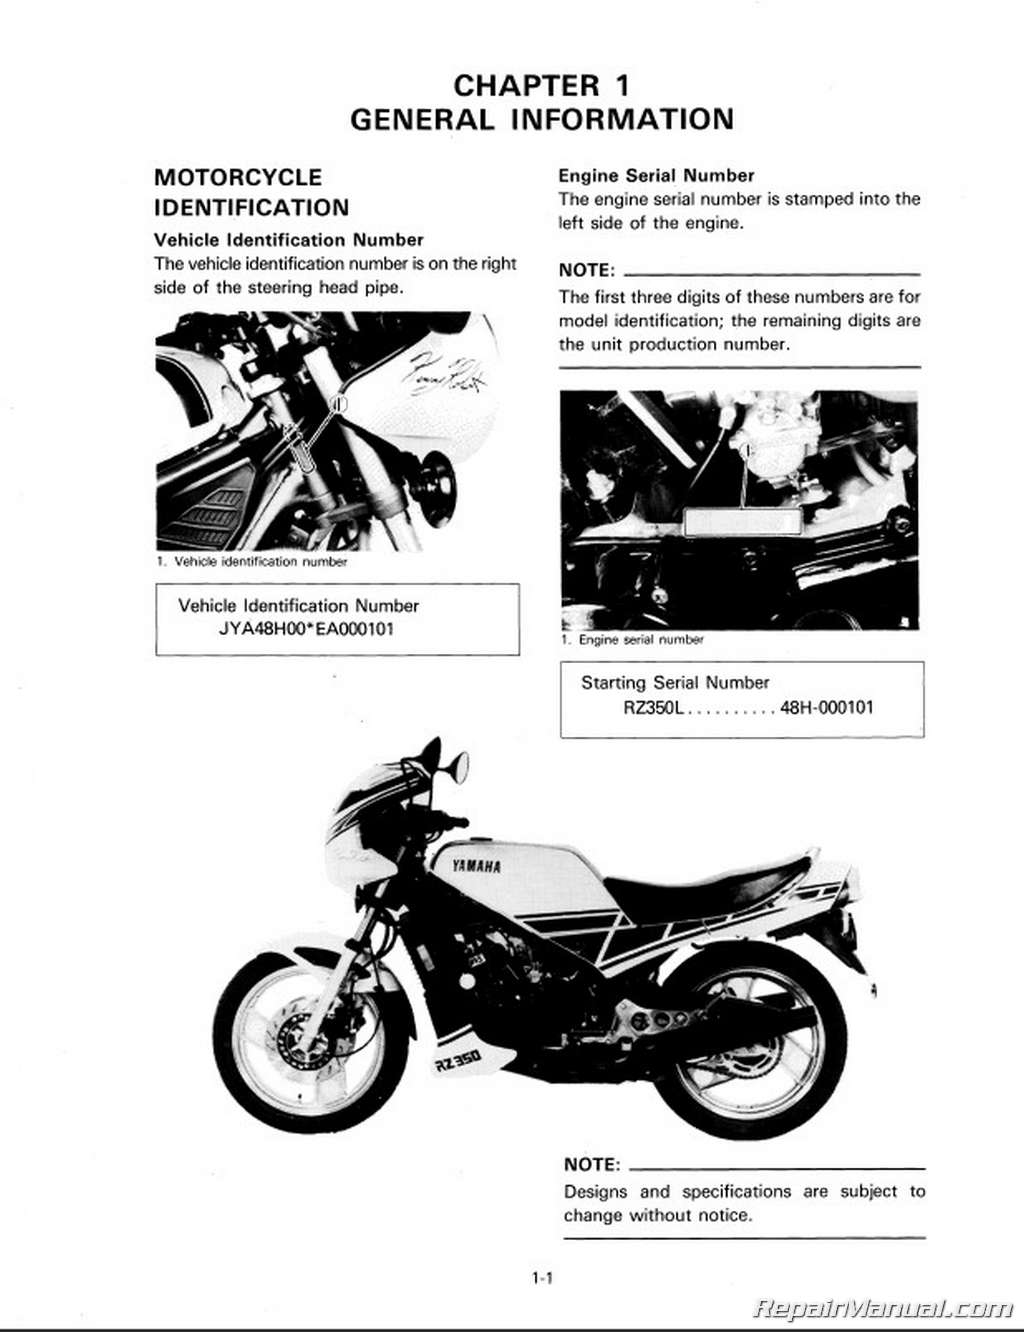 Yamaha Owners Manuals - Yamaha Motor Corp, USA